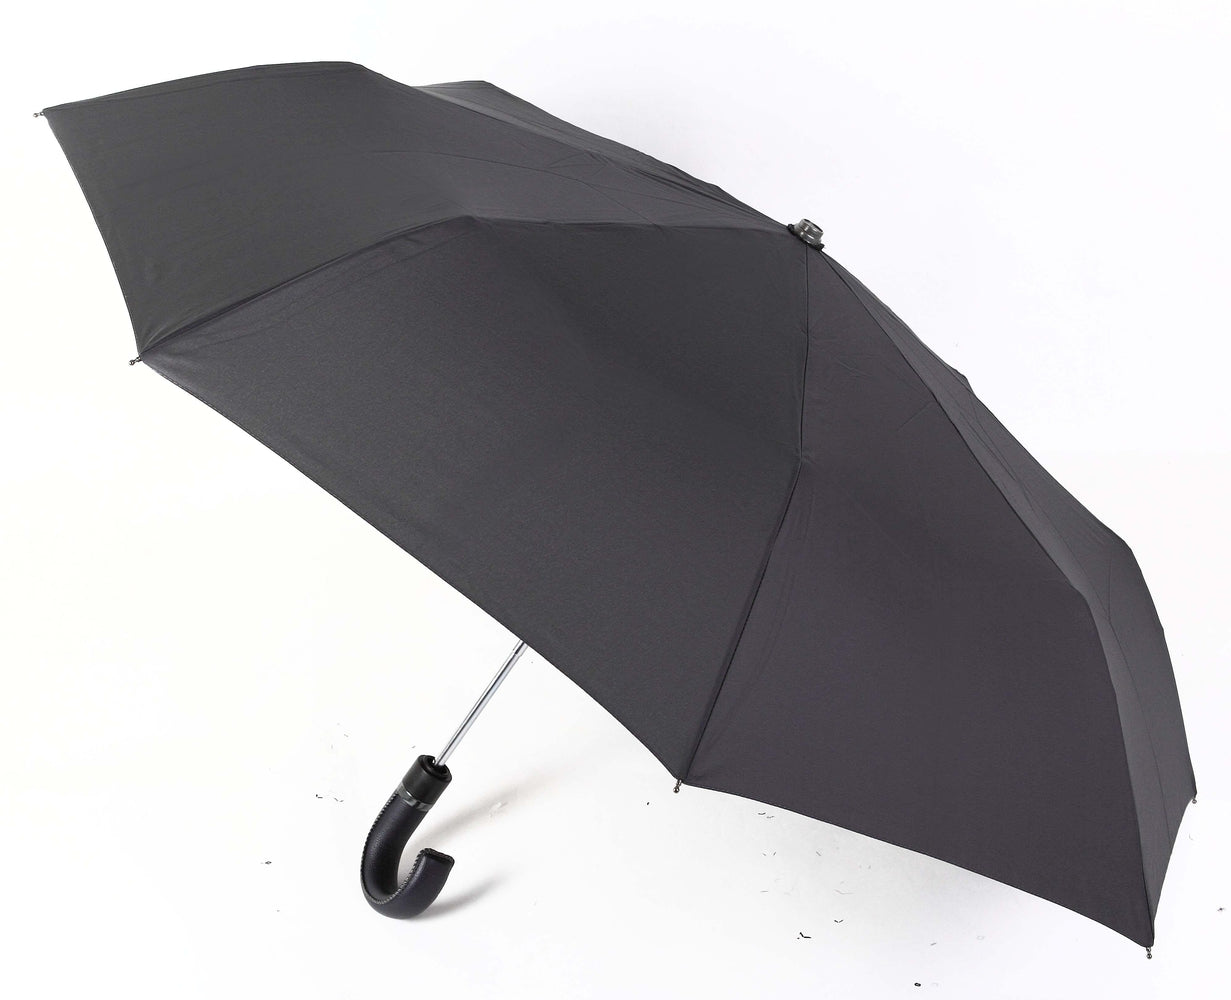 Paraplyer-Vogue Herre Paraply Windproof med Automatisk Åpning og lukking Blå-BagBrokers